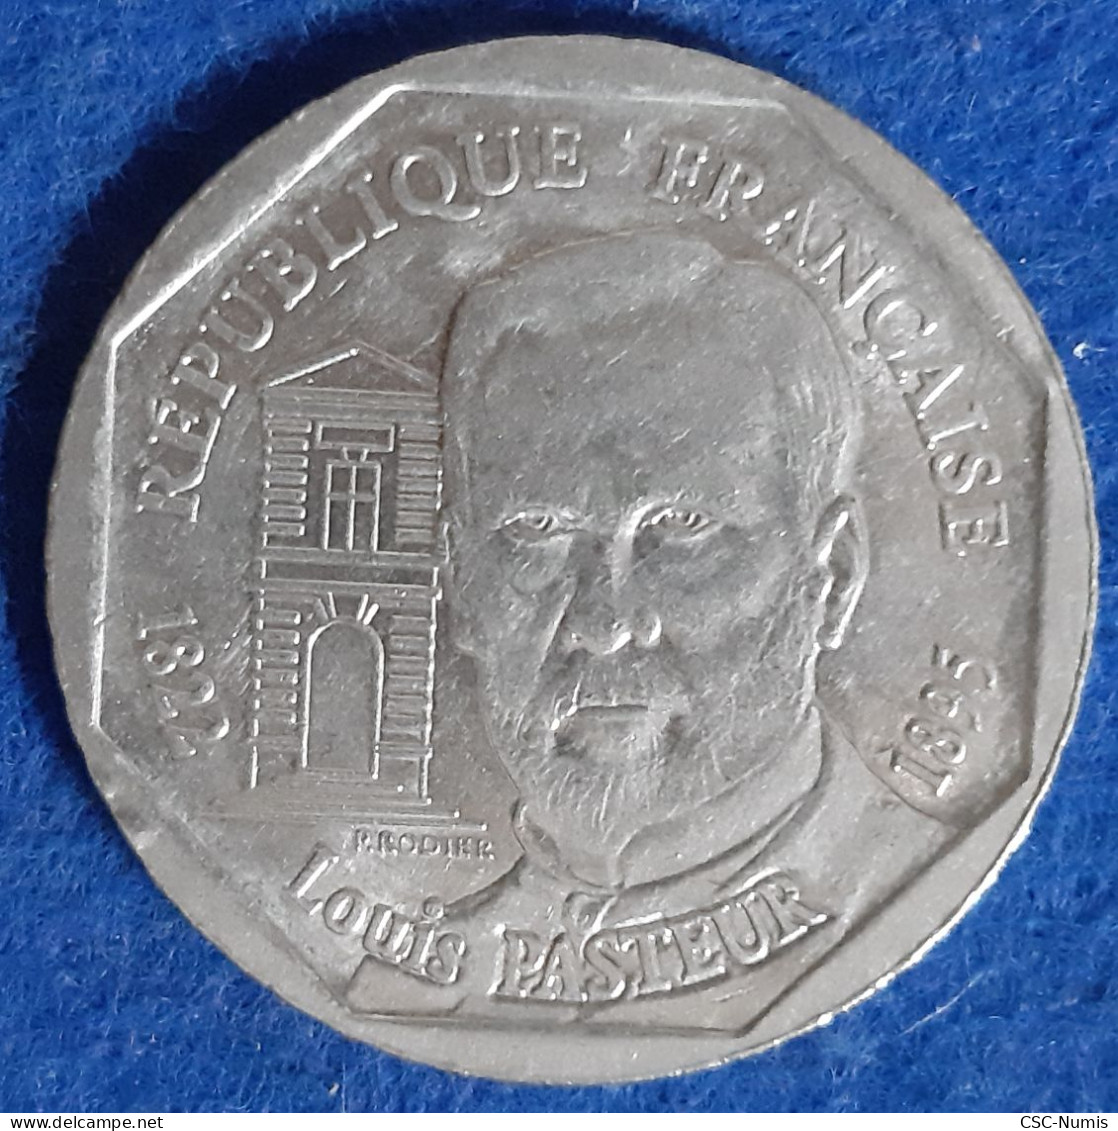 (CG#132) - Cinquième République - 2 Francs 1995 - Pasteur - Gedenkmünzen